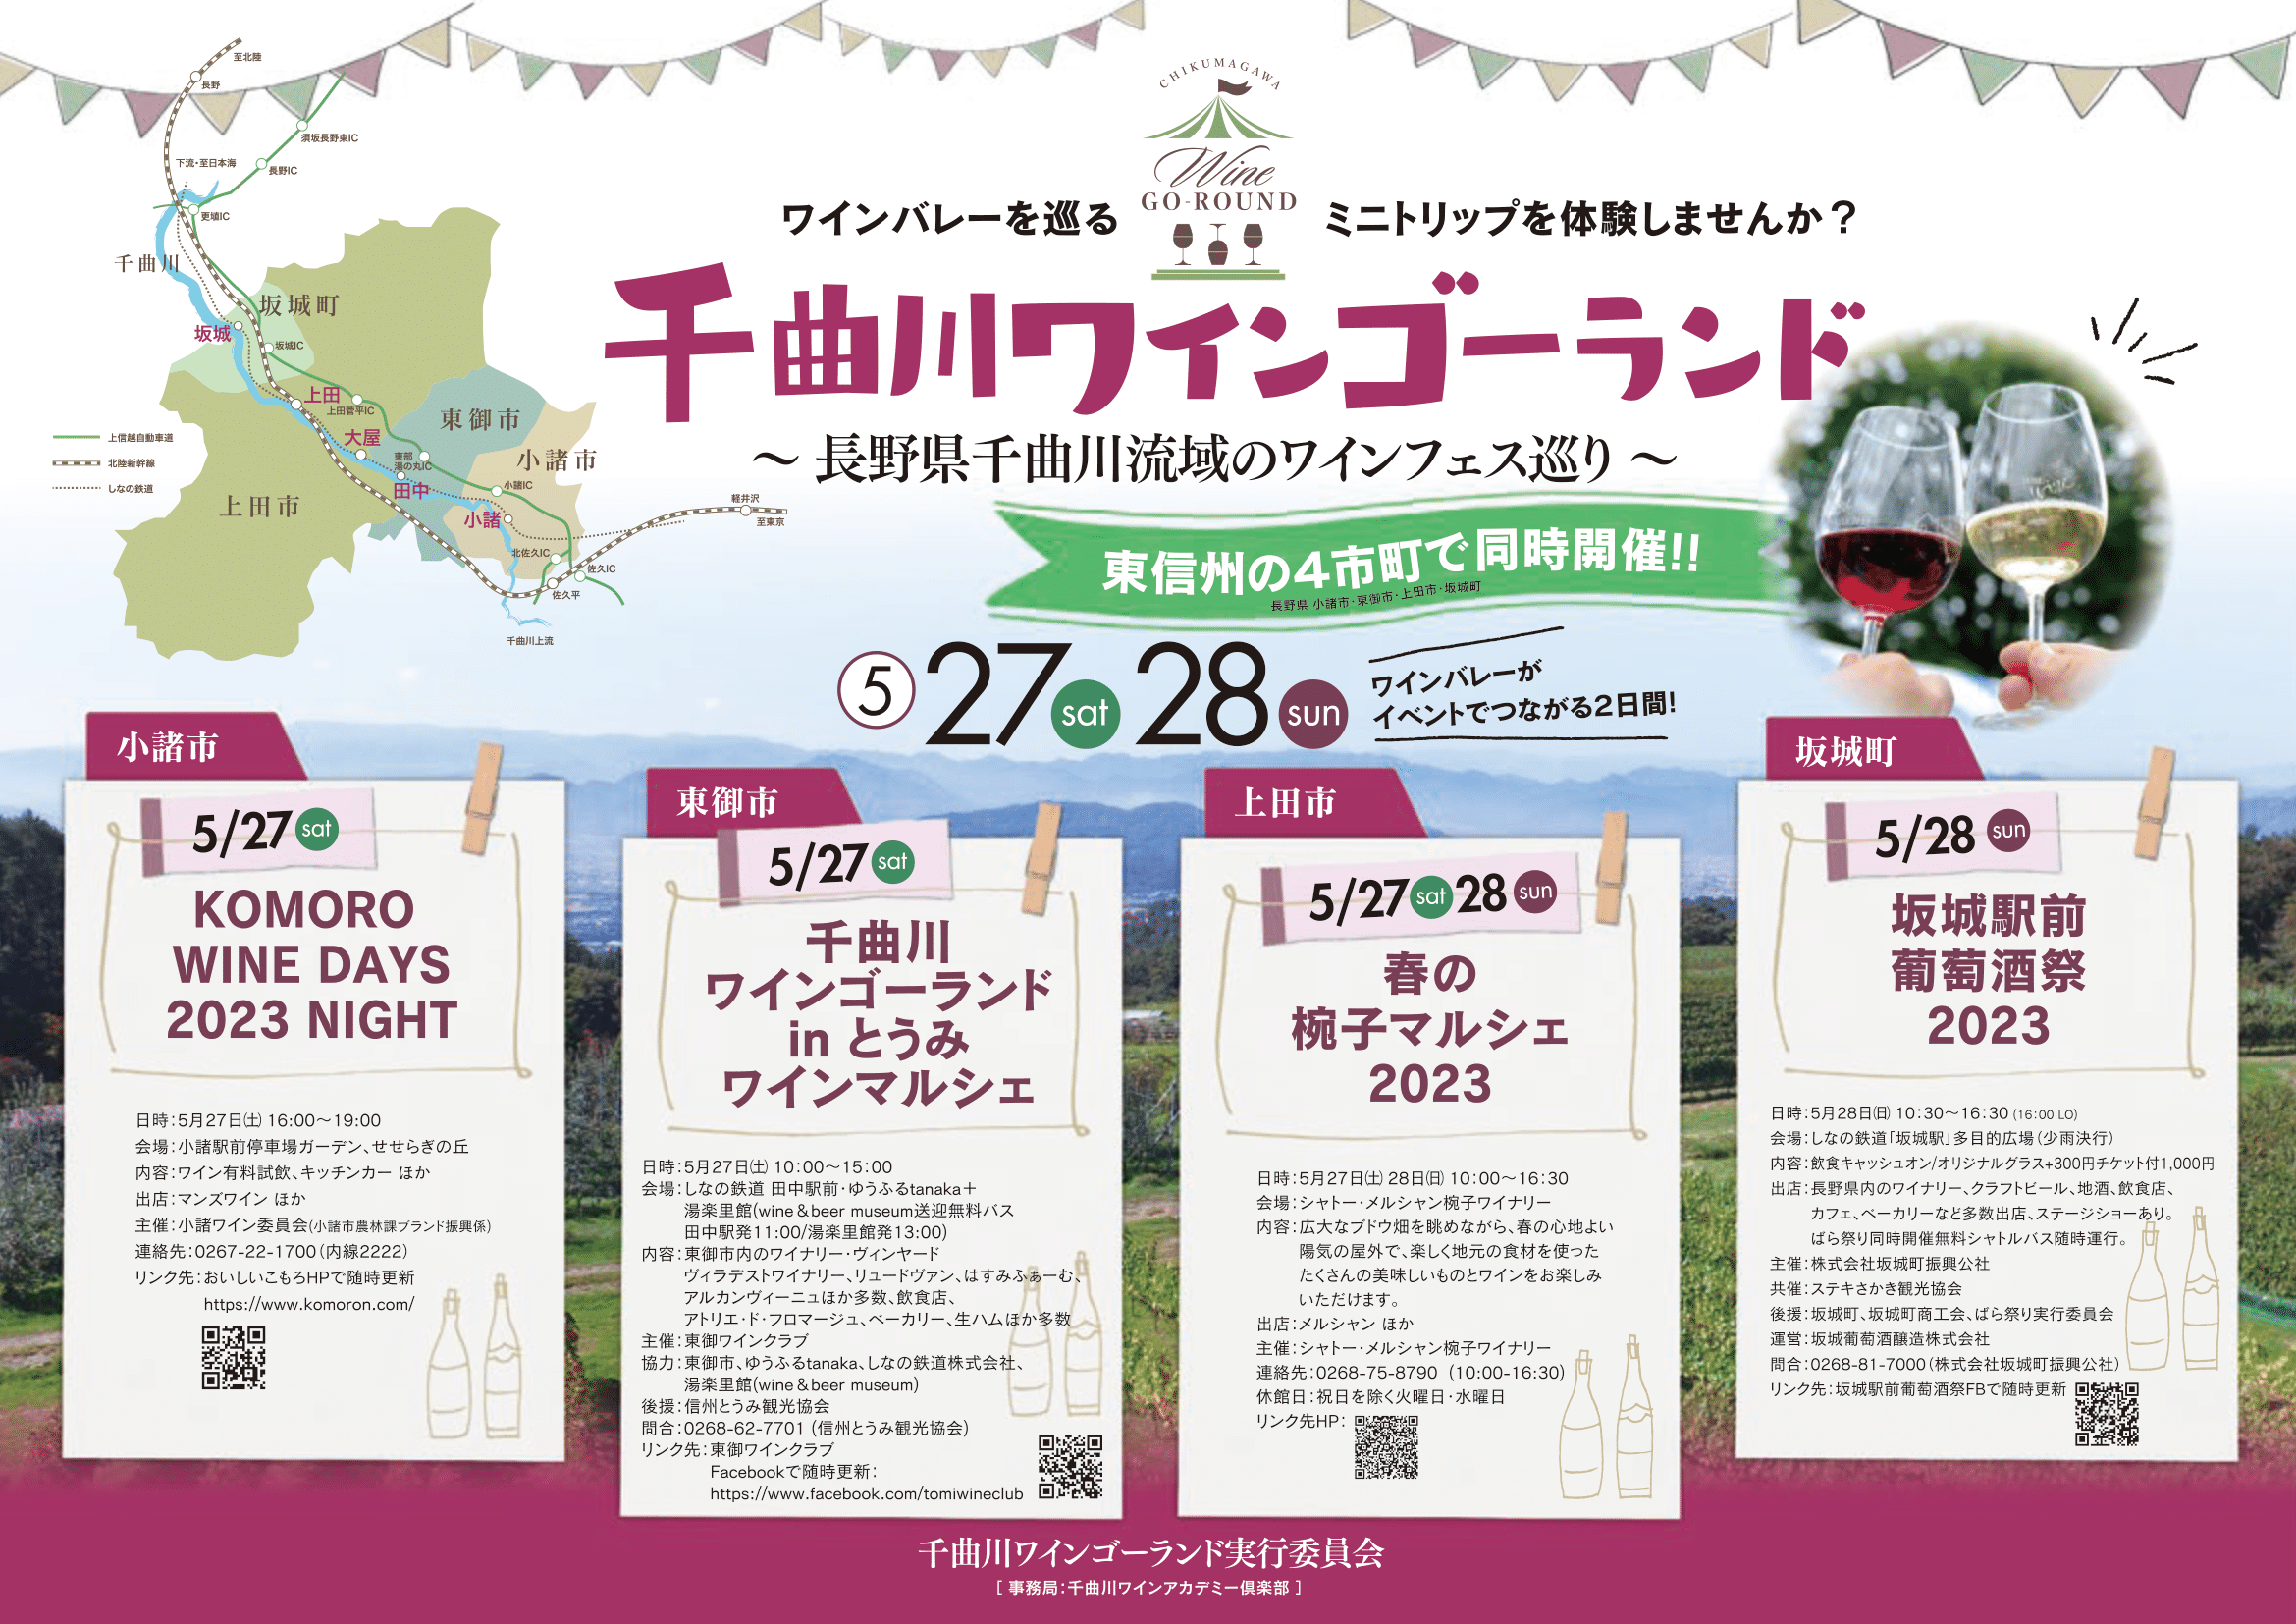 長野県・千曲川ワインバレー東地区の小規模ワイナリーで
ワインを味わうさまざまなイベントを5/27・28に同時開催！